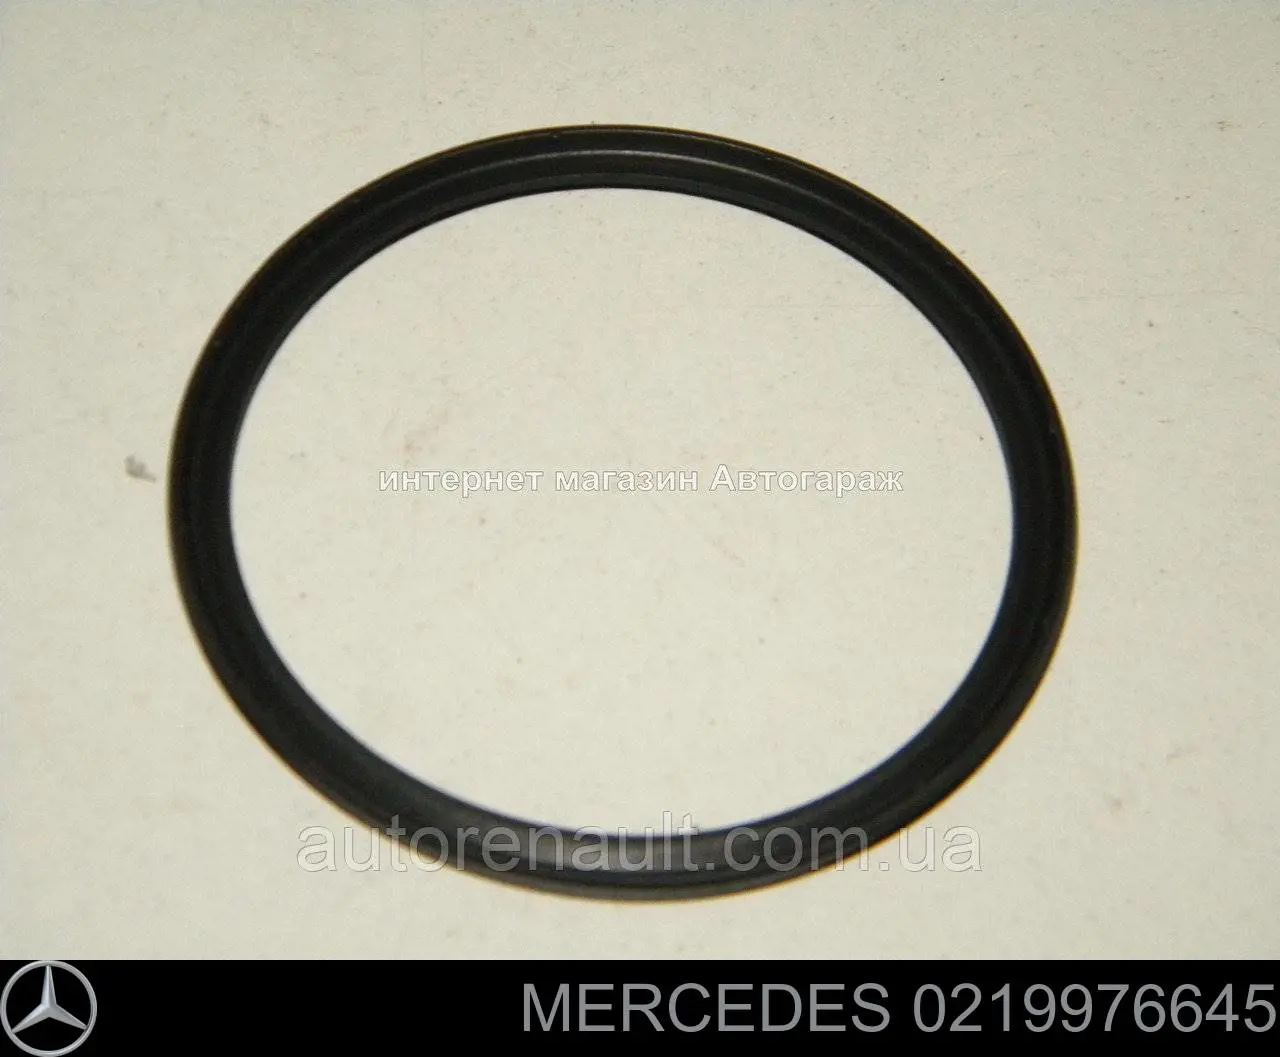 0219976645 Mercedes anel de vedação (vedante de cano derivado de intercooler)